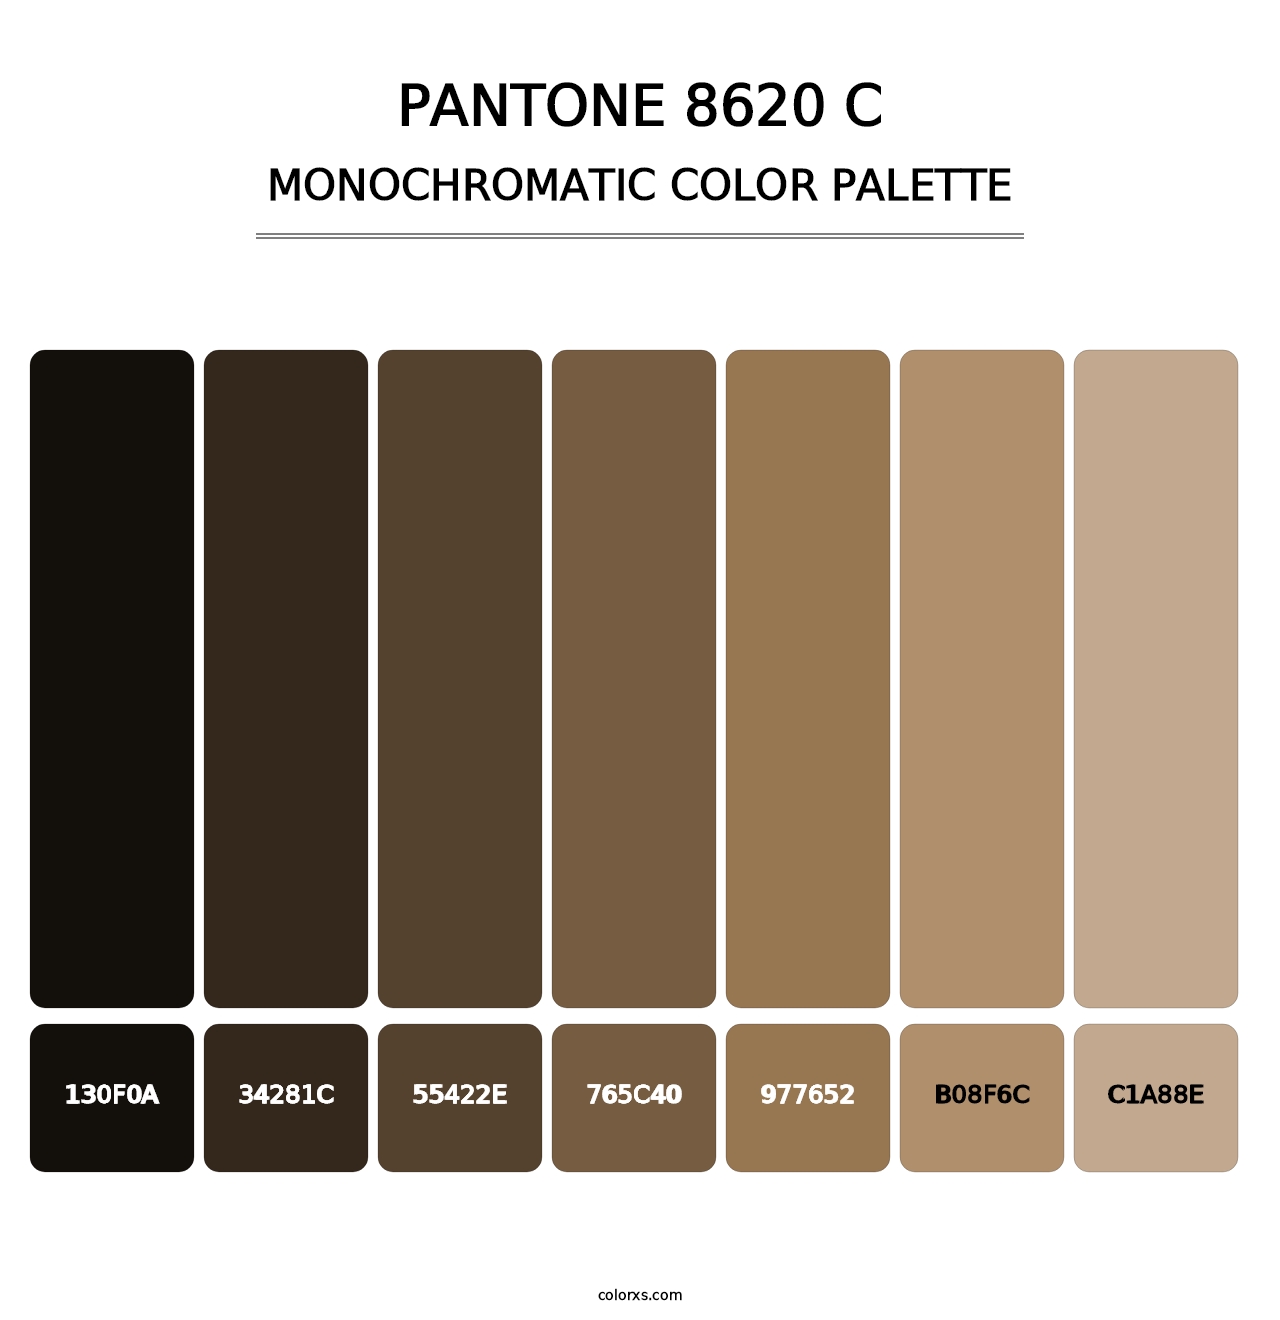 PANTONE 8620 C - Monochromatic Color Palette